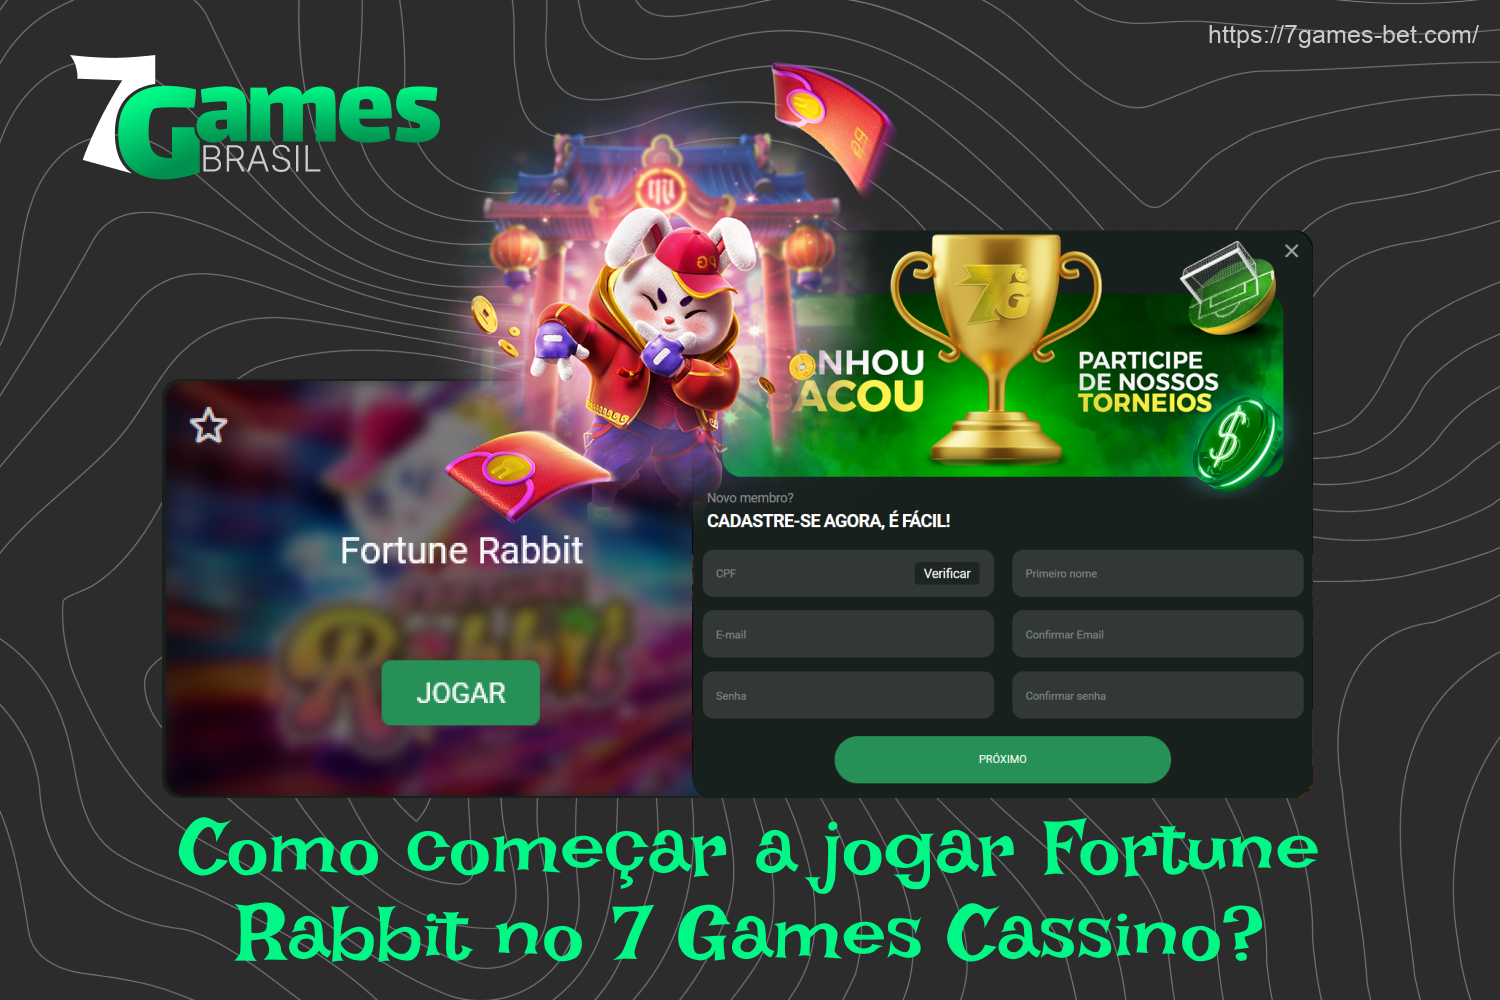 Os brasileiros podem começar a jogar Fortune Rabbit no 7Games depois de se registrarem e fazerem um depósito